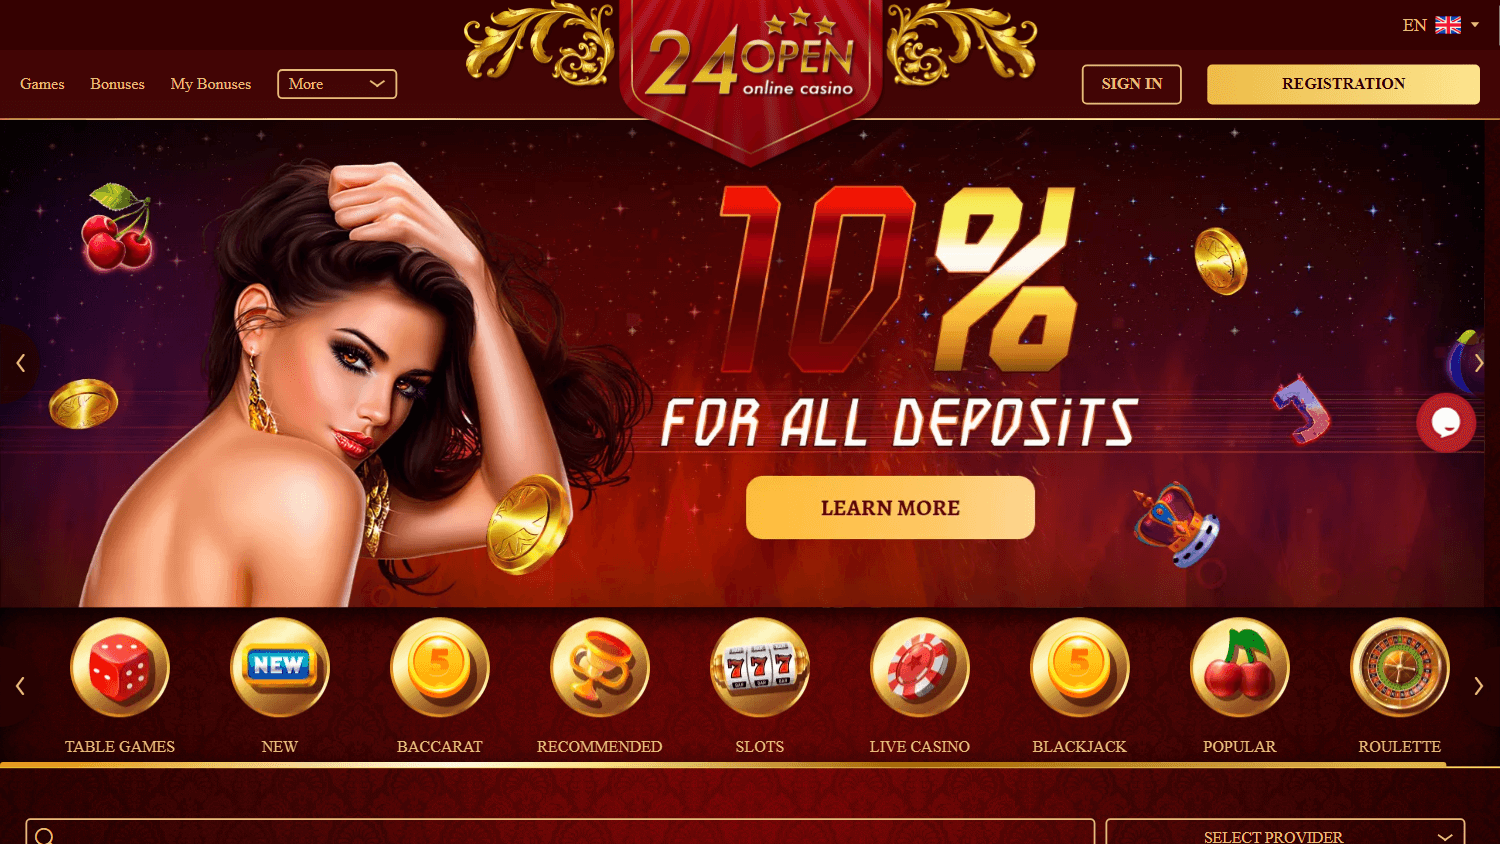 24open_casino_game_gallery_desktop